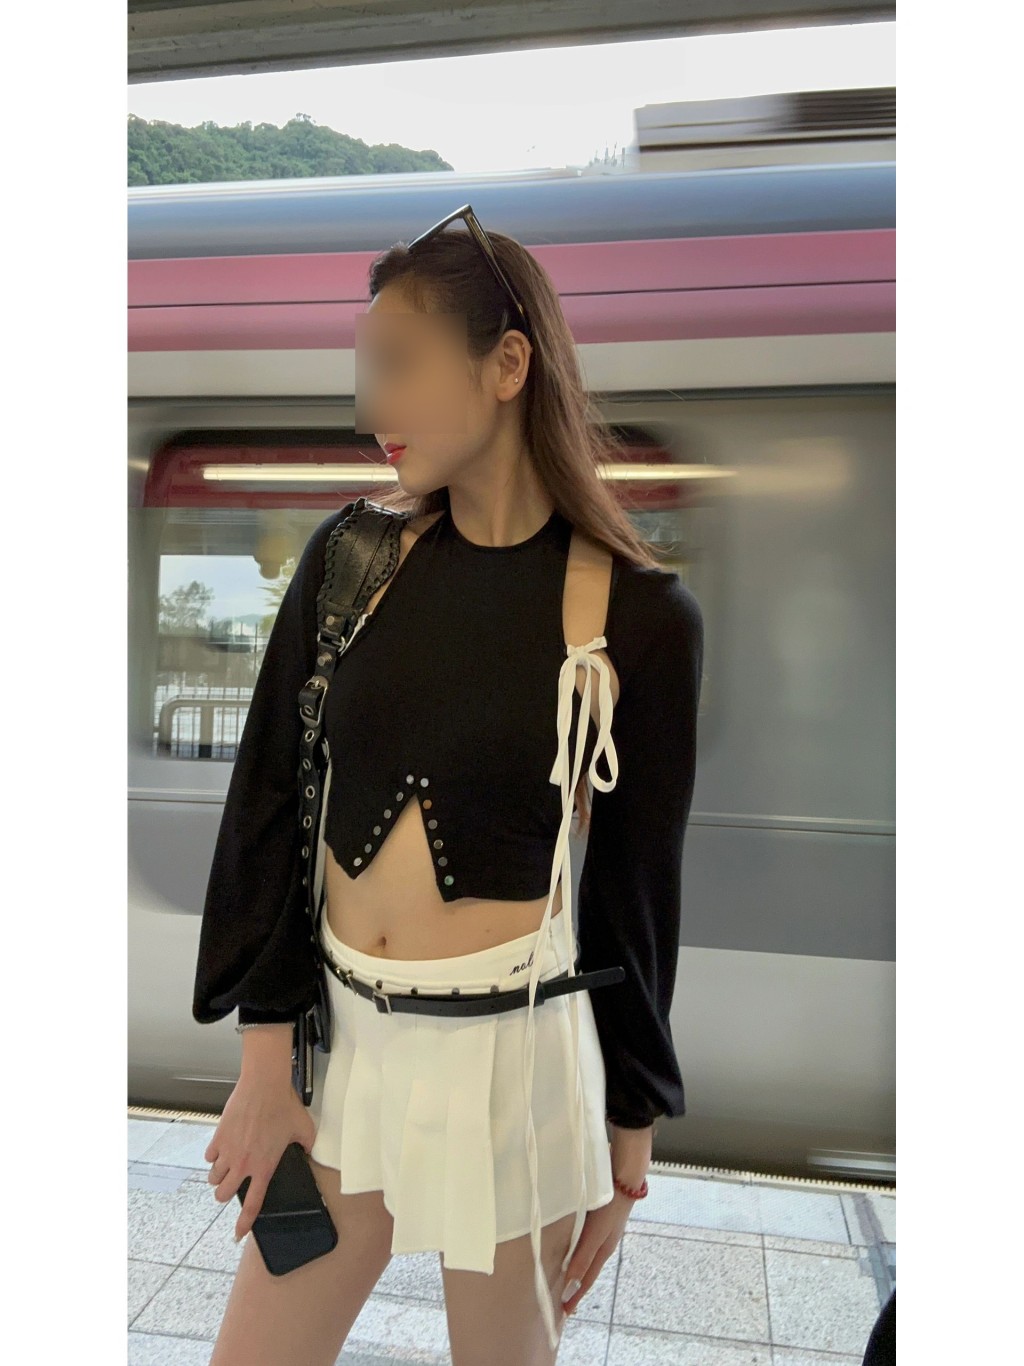 少女在其个人社交平台自我介绍为一名广州模特儿。